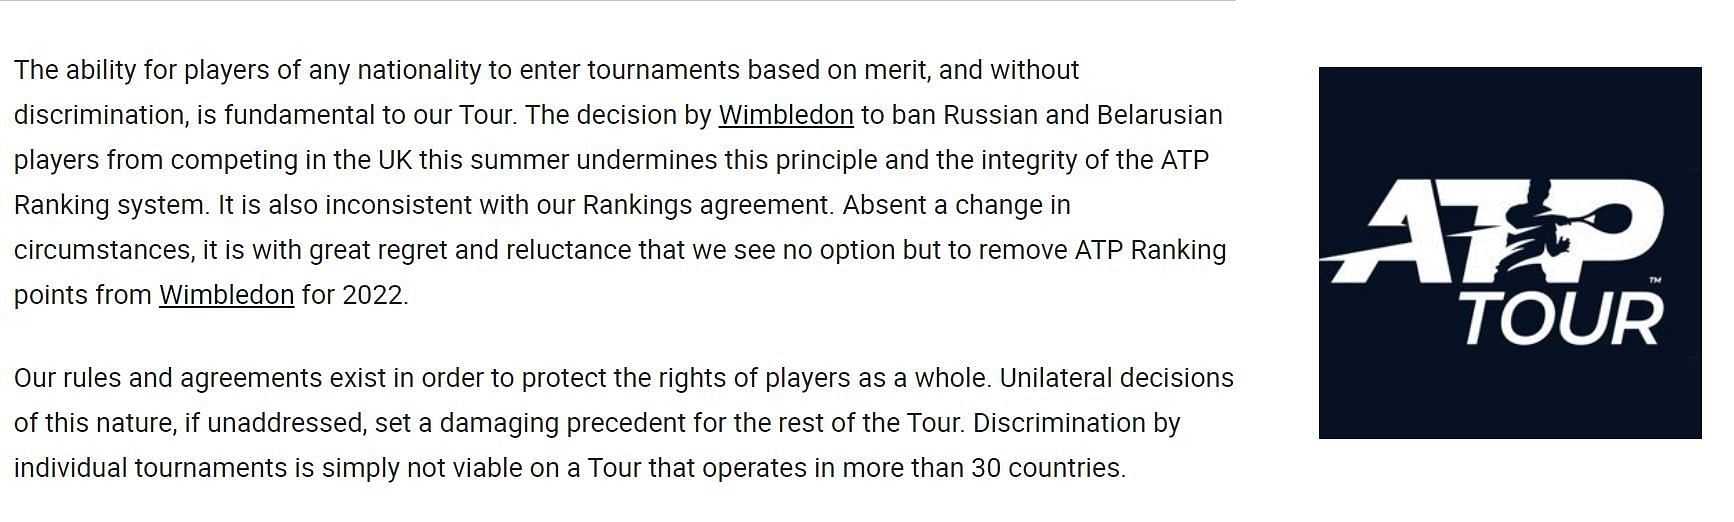 ATP की ओर से जारी बयान का अंश।